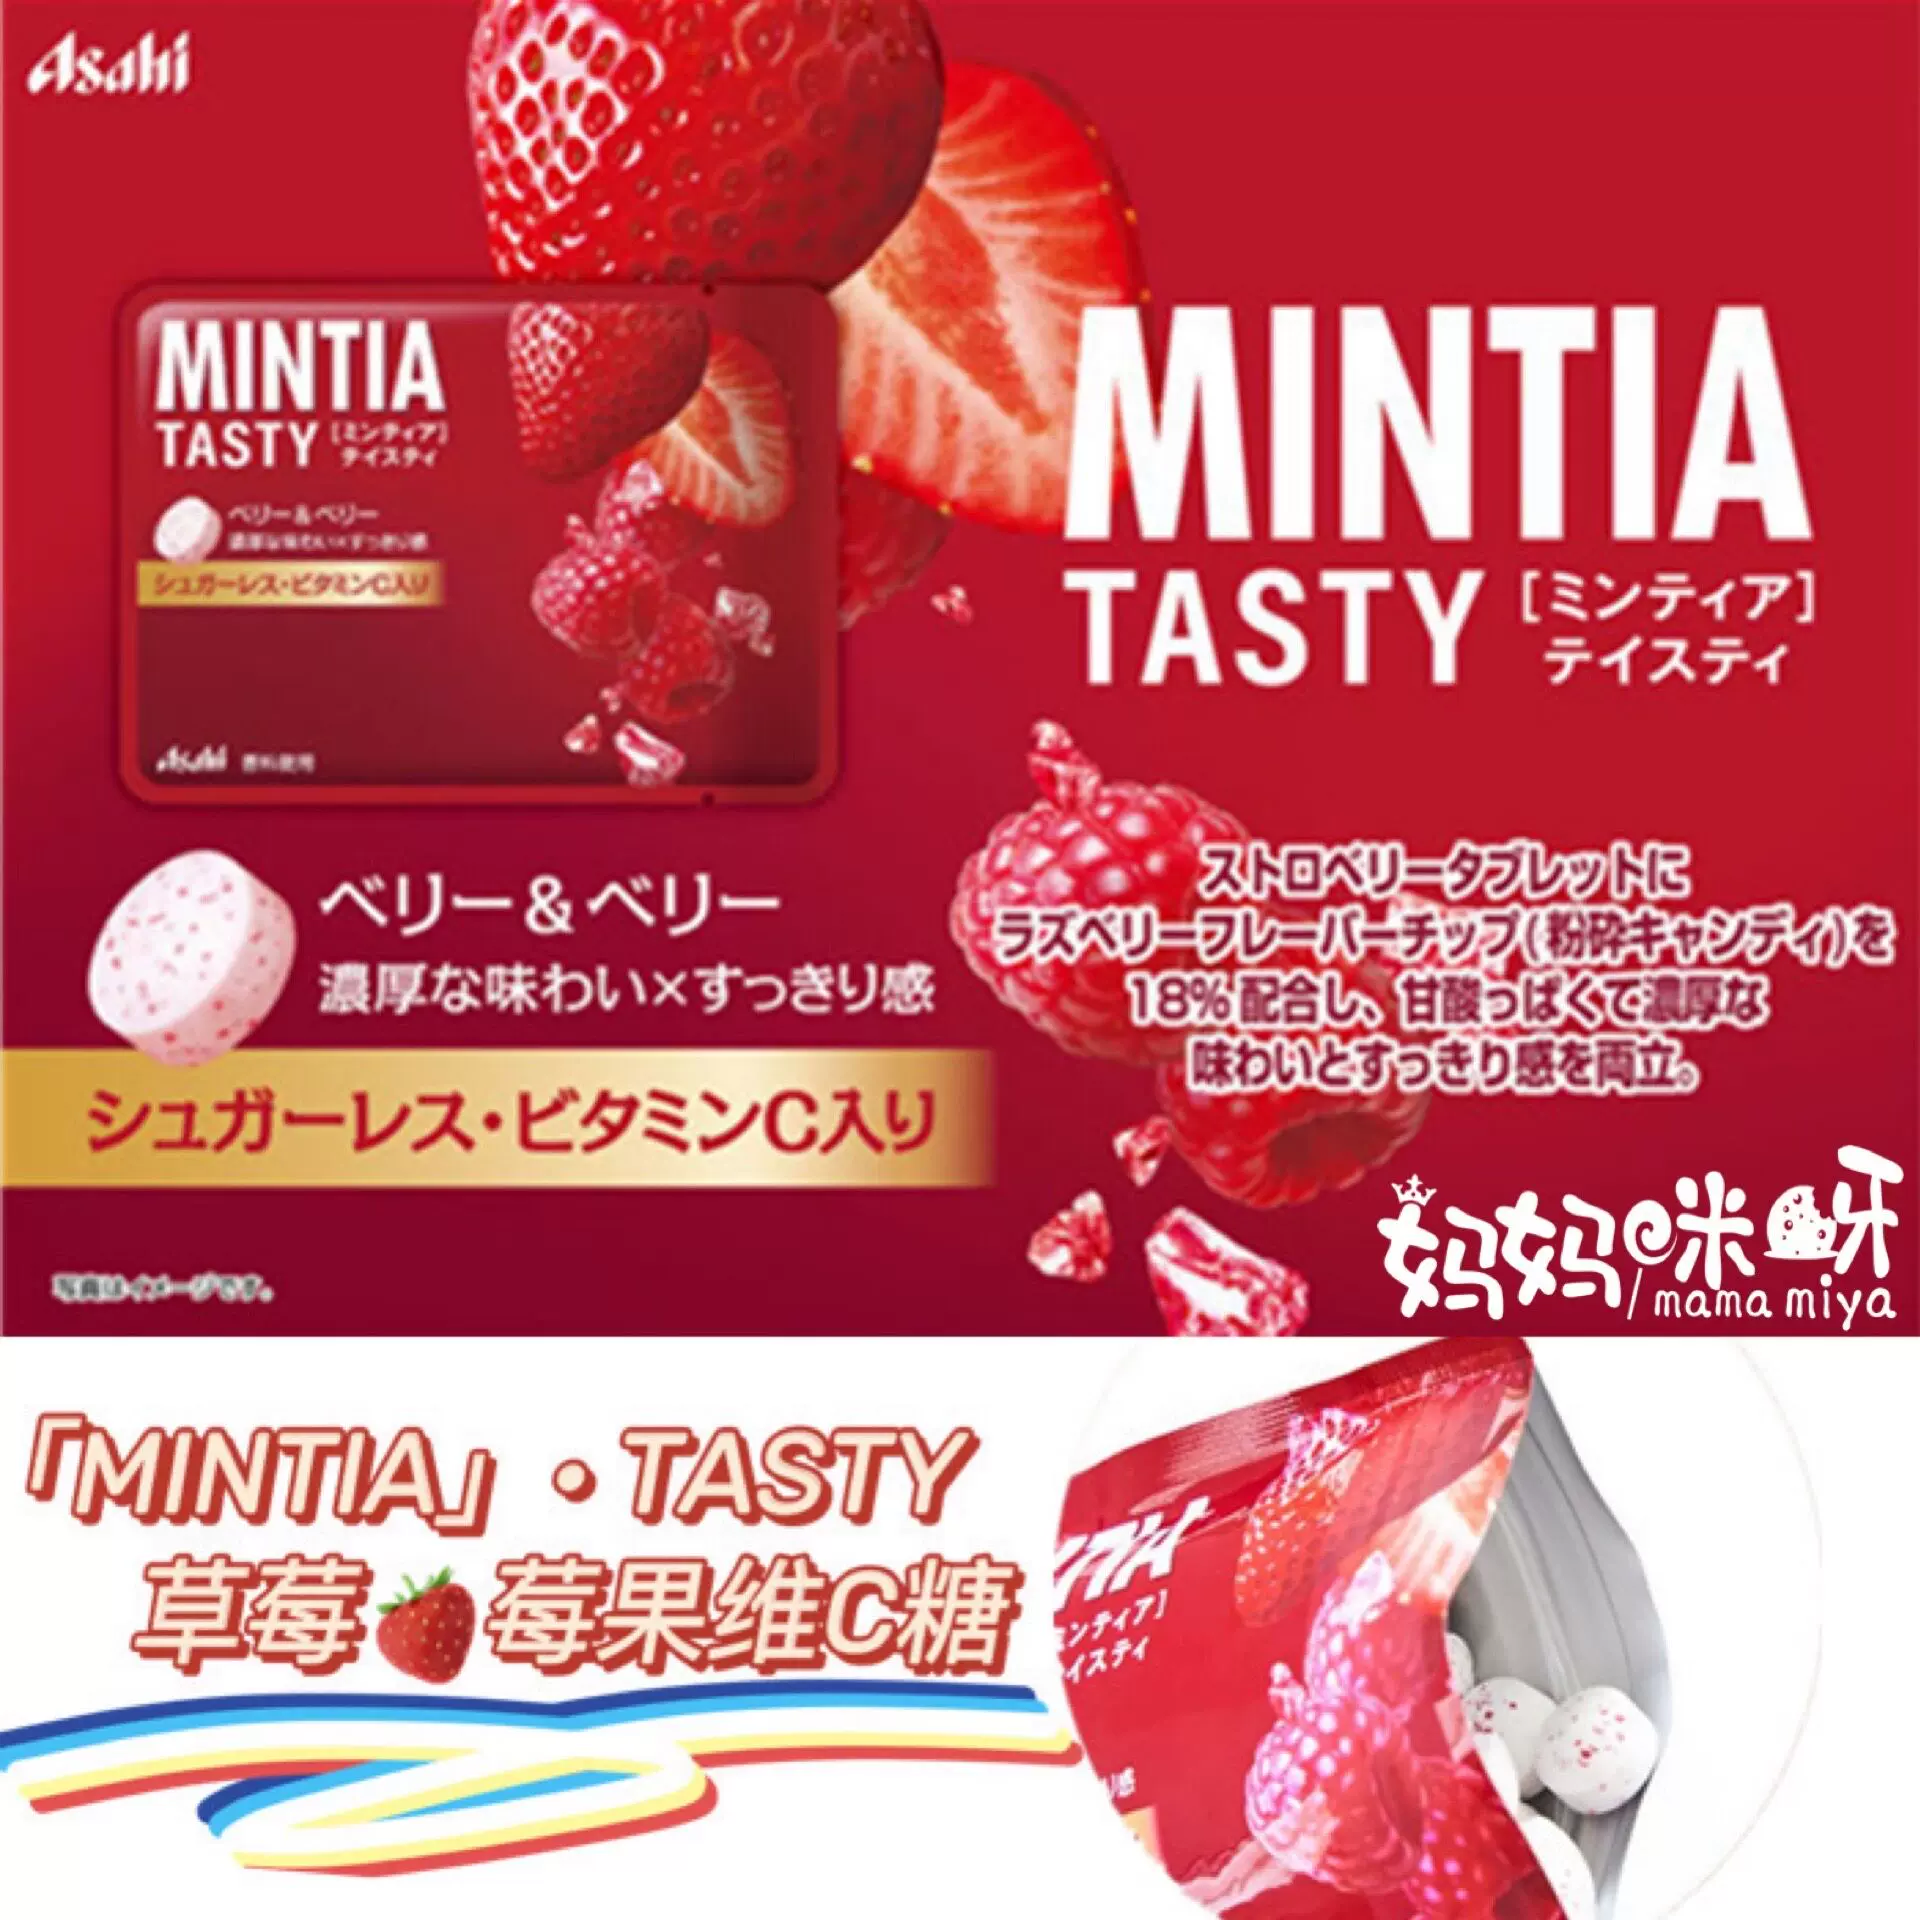 新品日本人气asahi朝日mintiatasty草莓果柑橘芒果蜜桃味润喉糖